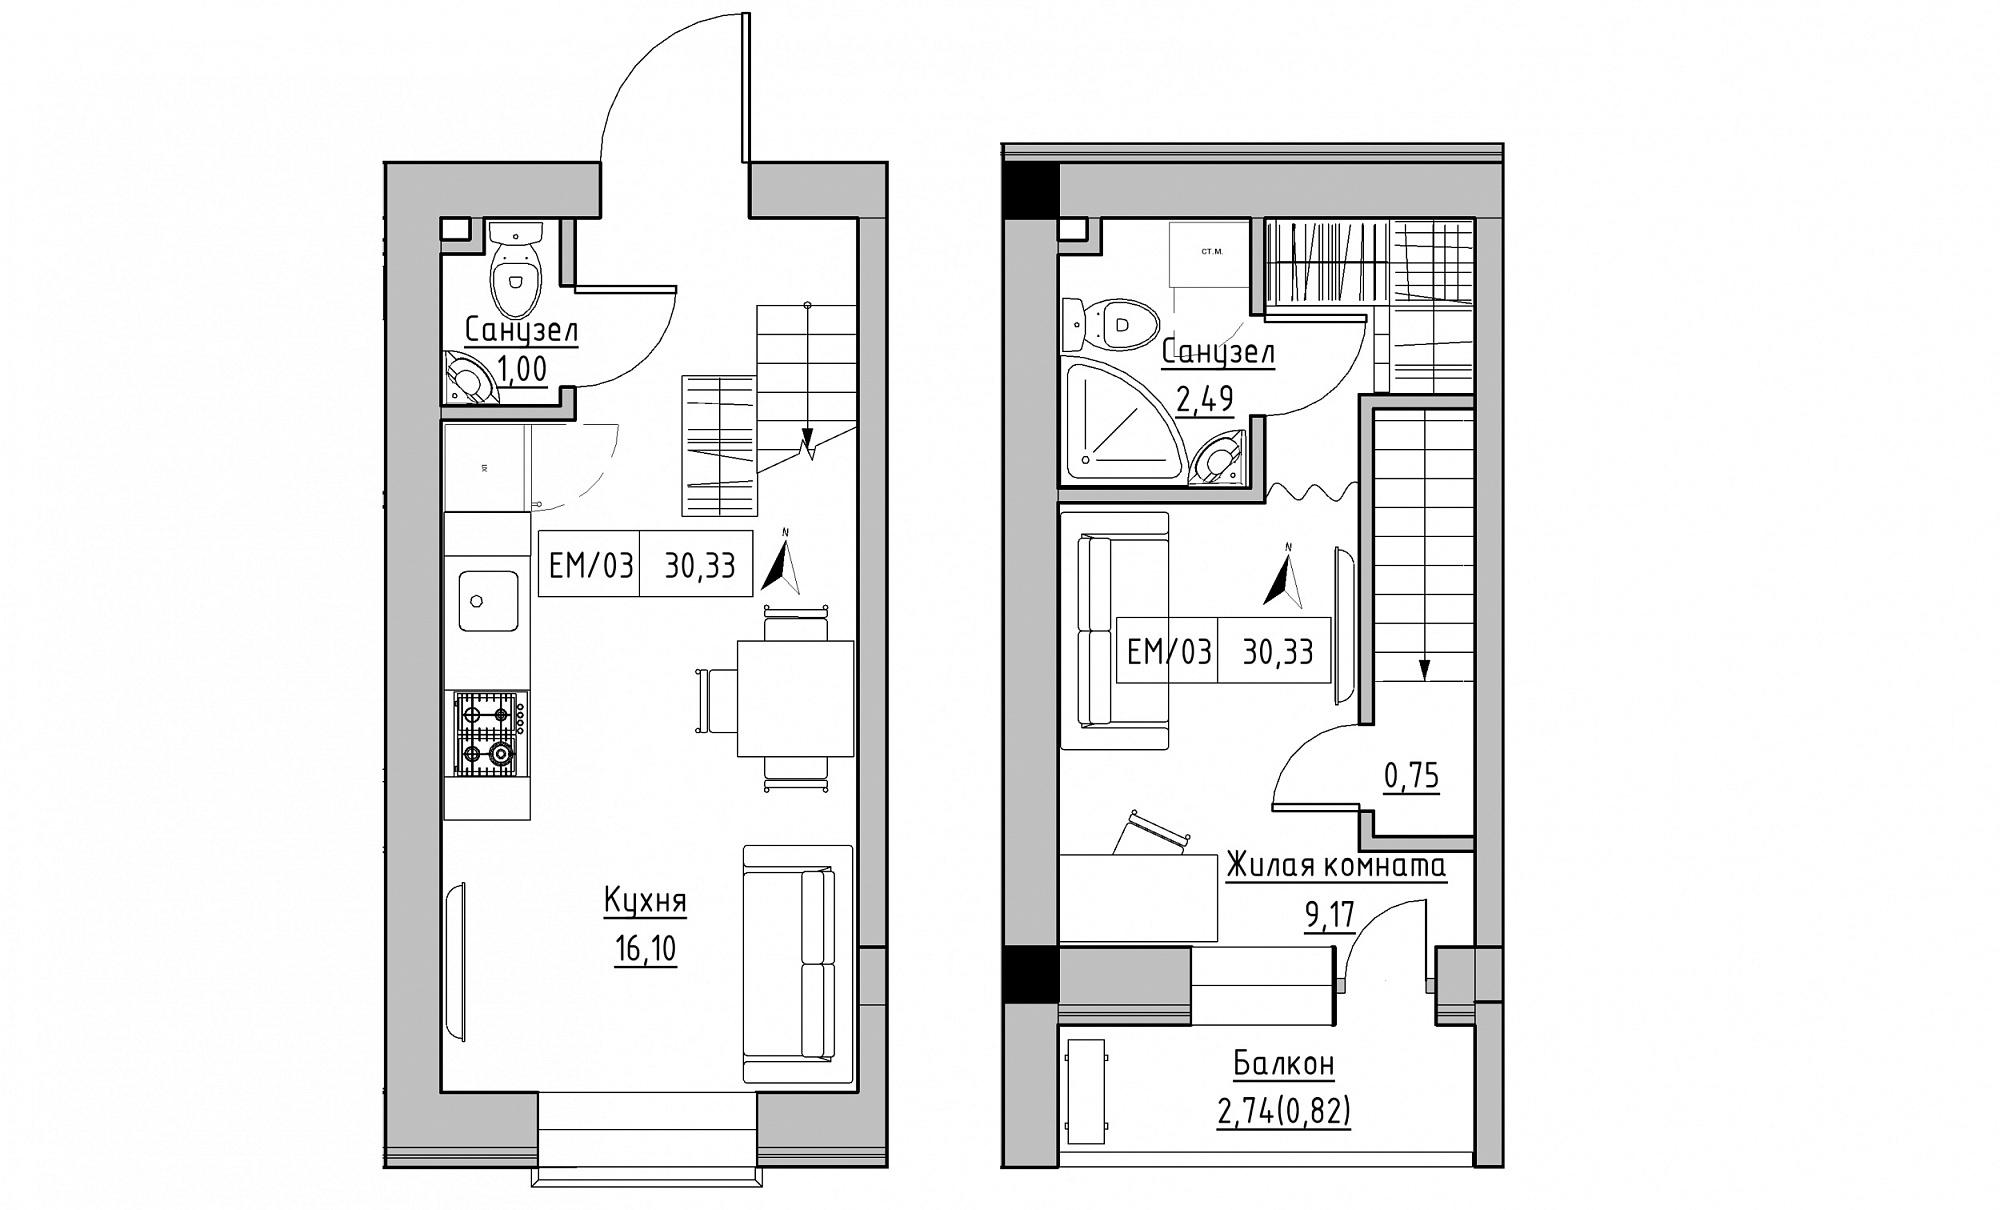 Planning 2-lvl flats area 30.33m2, KS-015-05/0010.